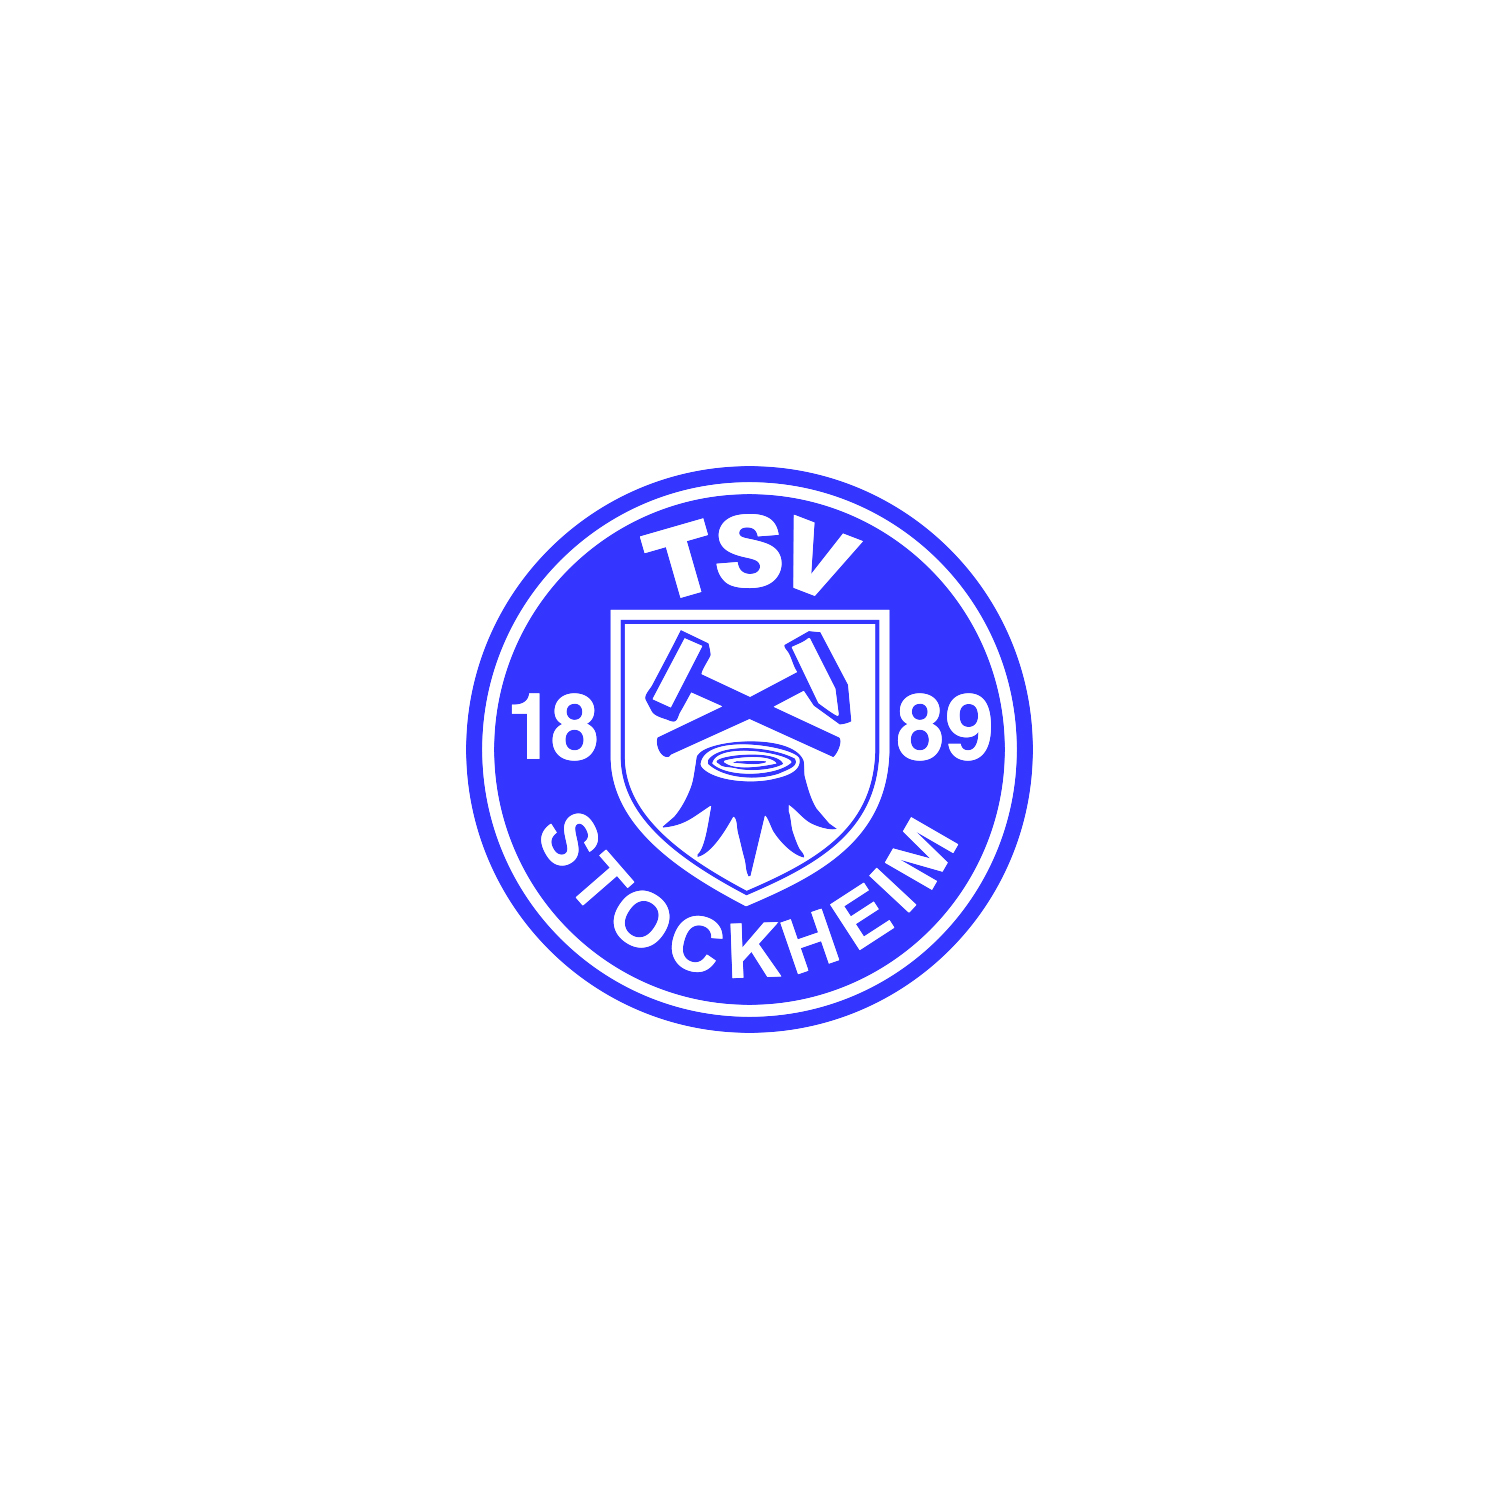 TSV Stockheim: Verleihung Qualitätssiegel Seniorenfreundlicher Verein